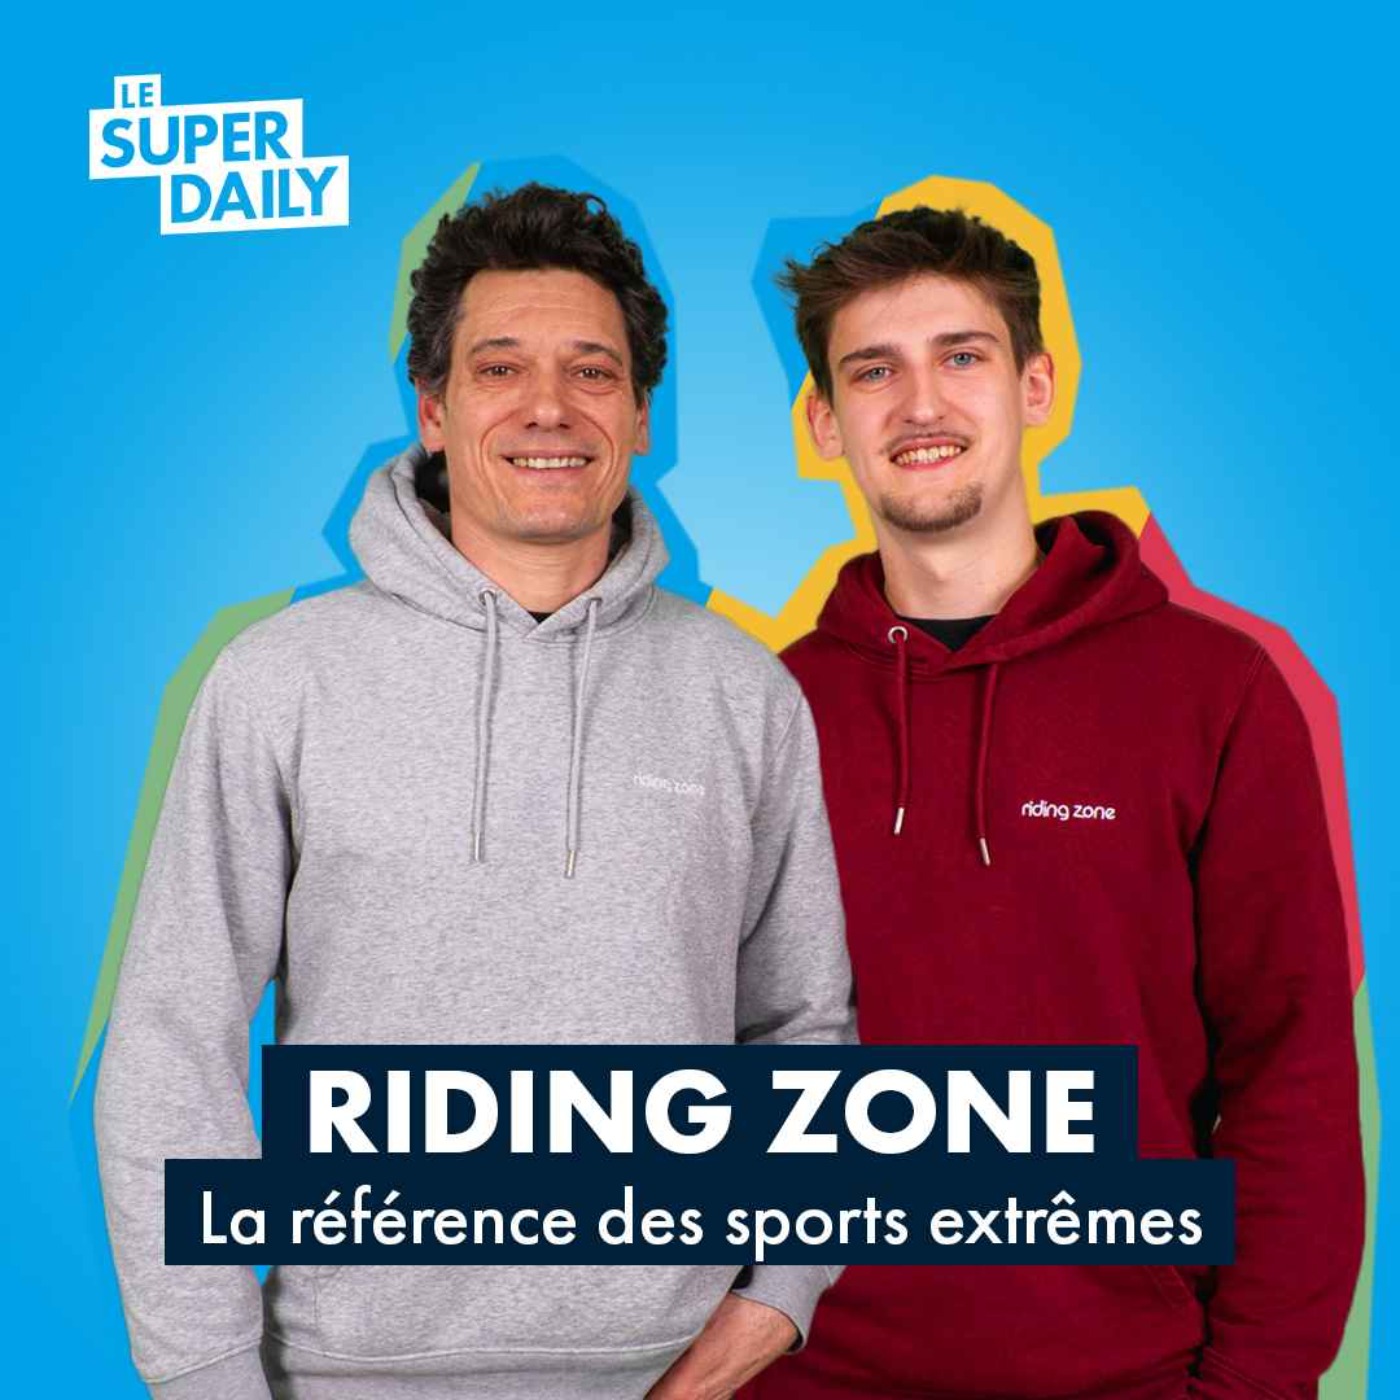 Avec Riding Zone : Le média de sports extrêmes aux 3M d’abonnés